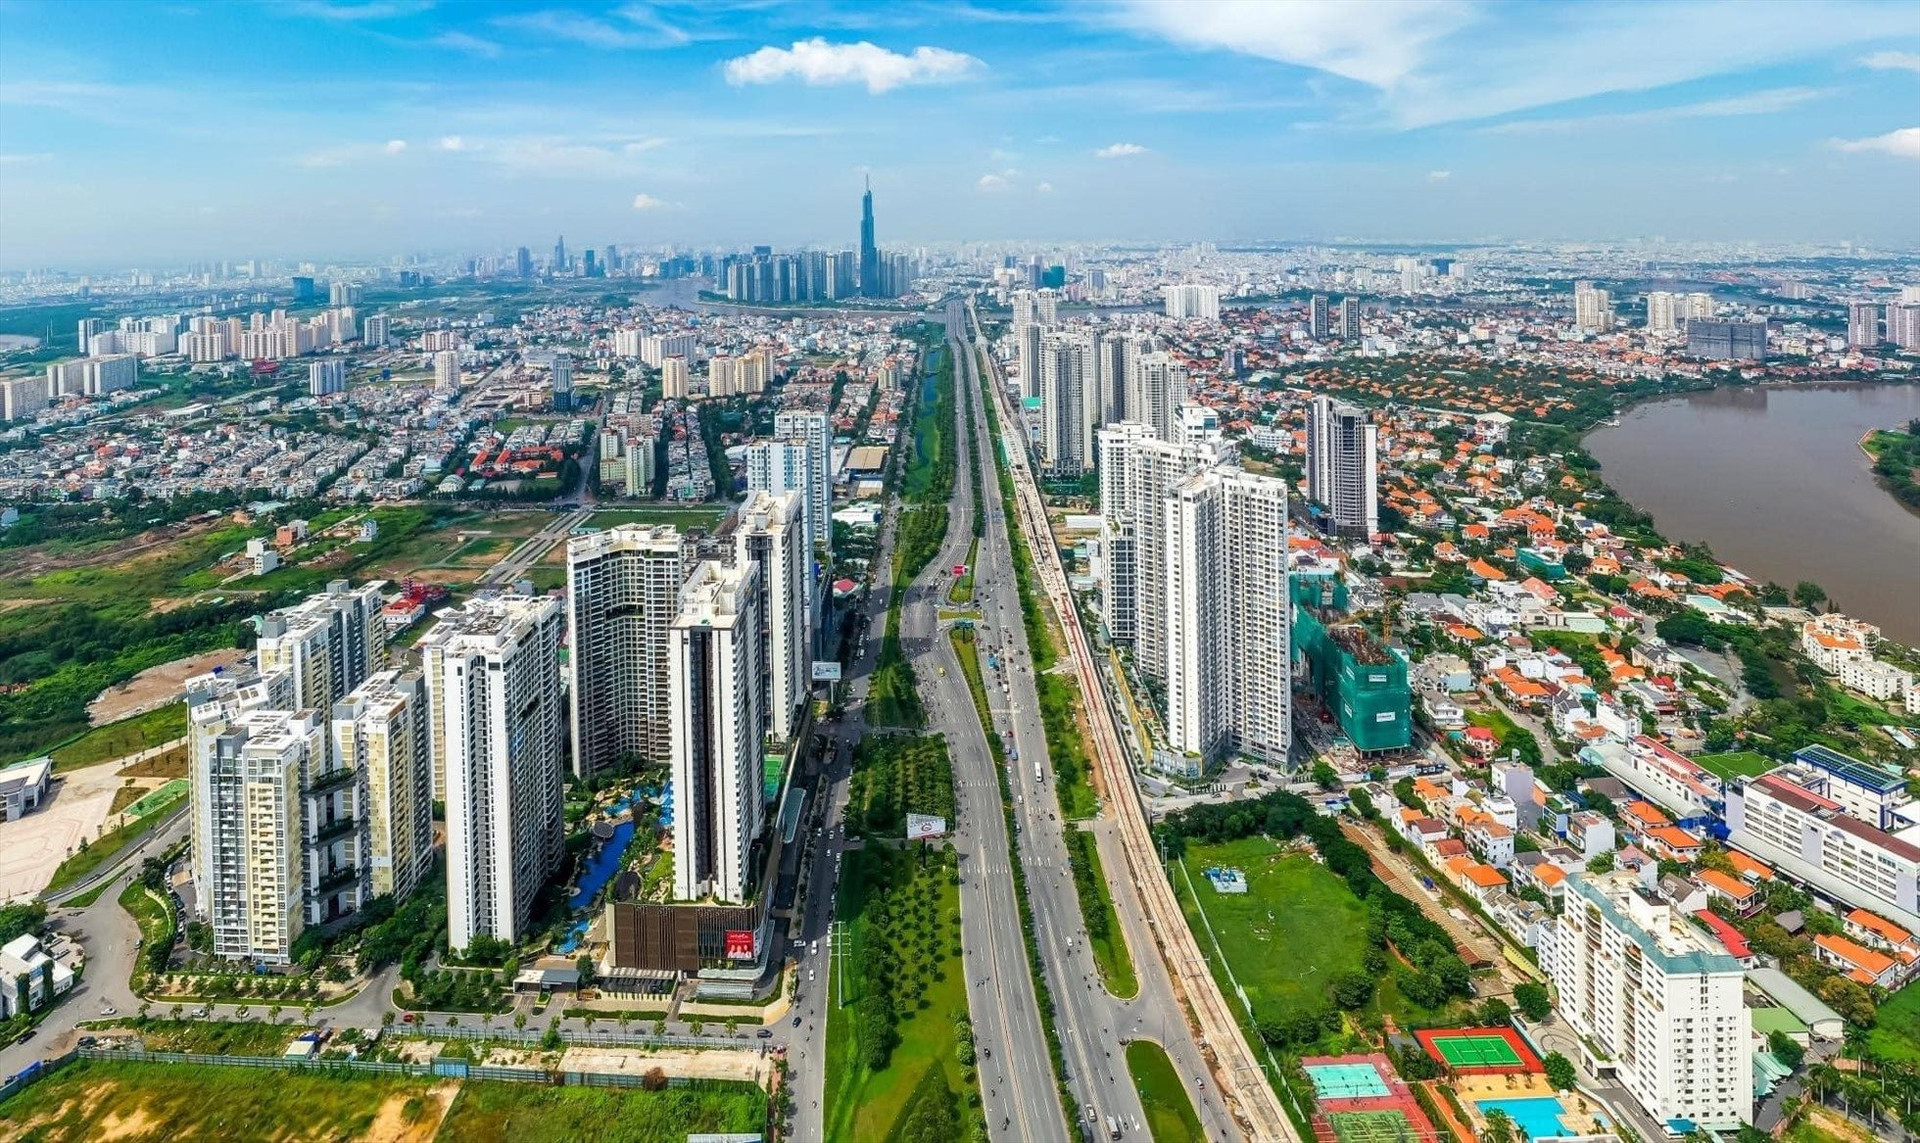 Bộ Xây dựng điểm mặt những dự án chung cư đang giảm giá tại Hà Nội và Tp.HCM - Ảnh 1.